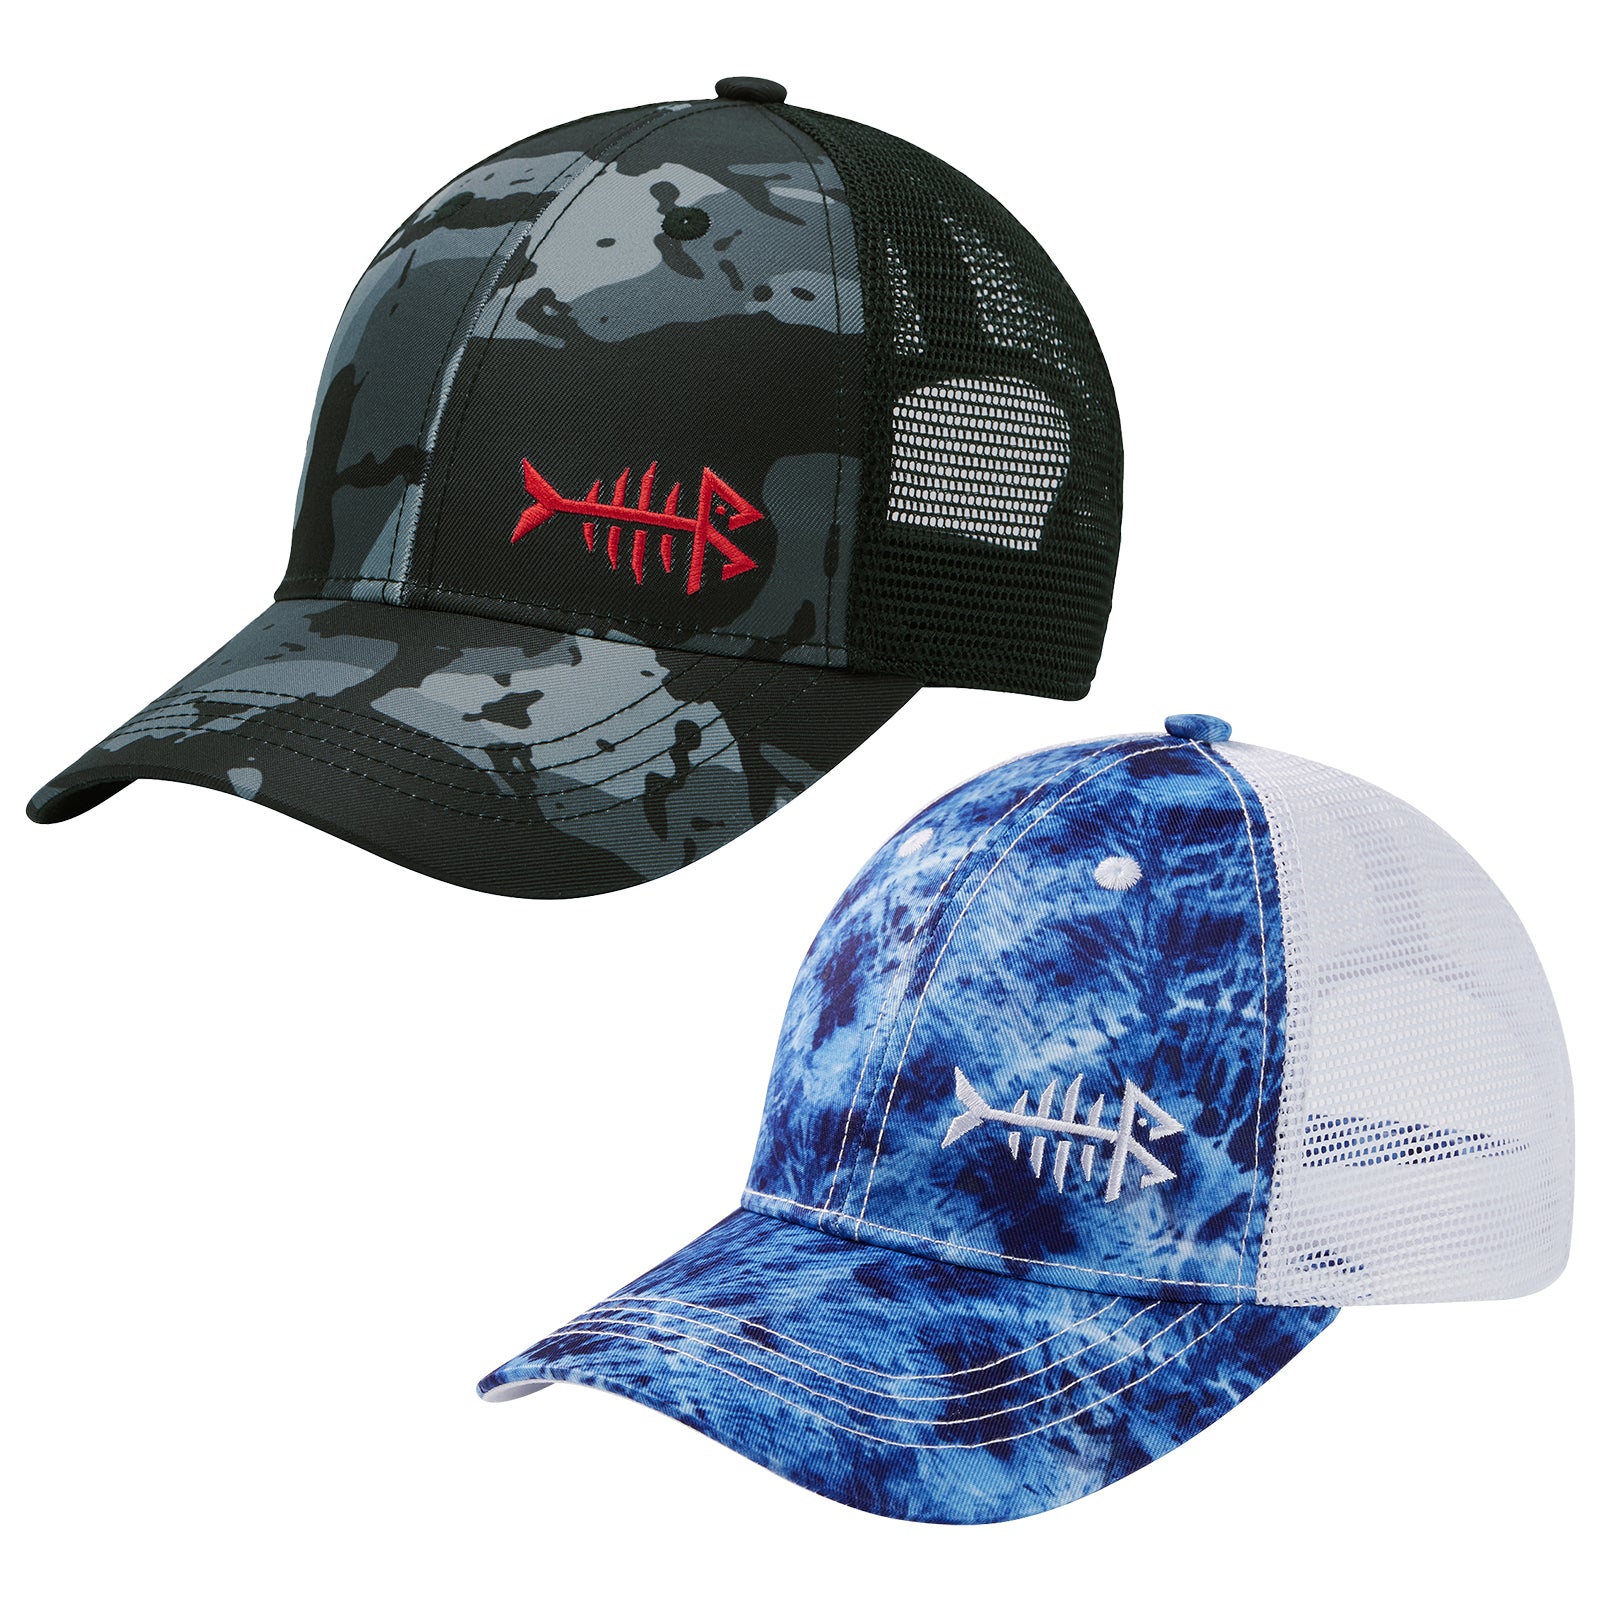 Unisex Altimate Mesh Back Hat   2PCS/Pack